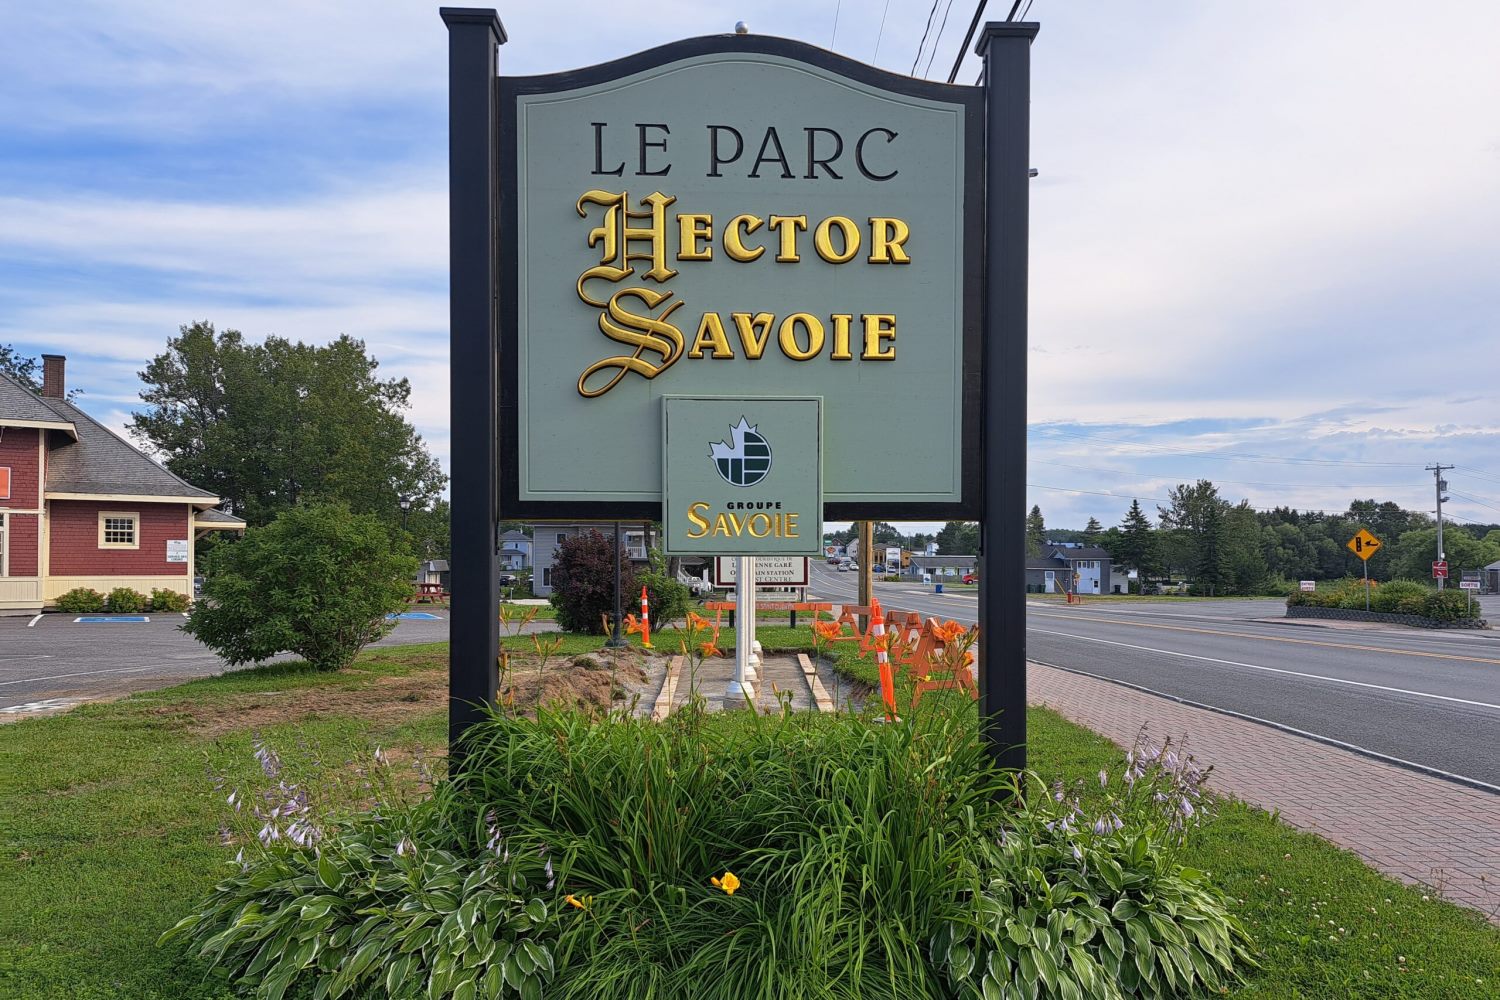 Panneau indiquant le parc Hector Savoie, décoré de plantes en bas.